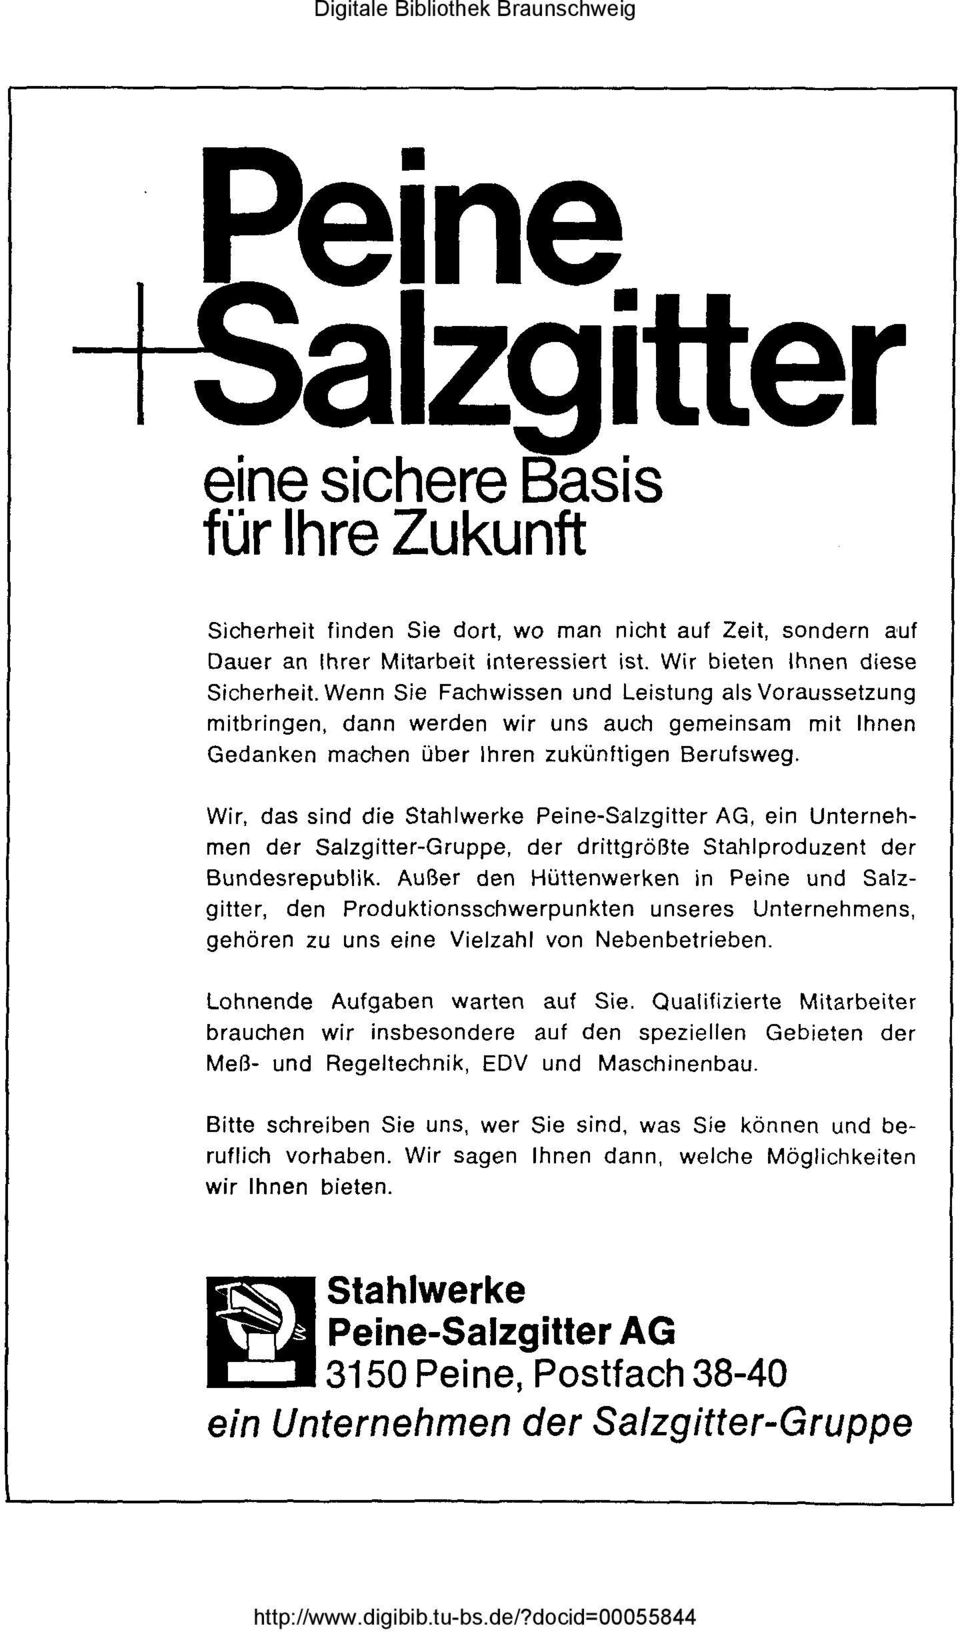 Wir, das sind die Stahlwerke Peine-Salzgitter AG, ein Unternehmen der Salzgitter-Gruppe, der drittgrößte Stahlproduzent der Bundesrepublik.